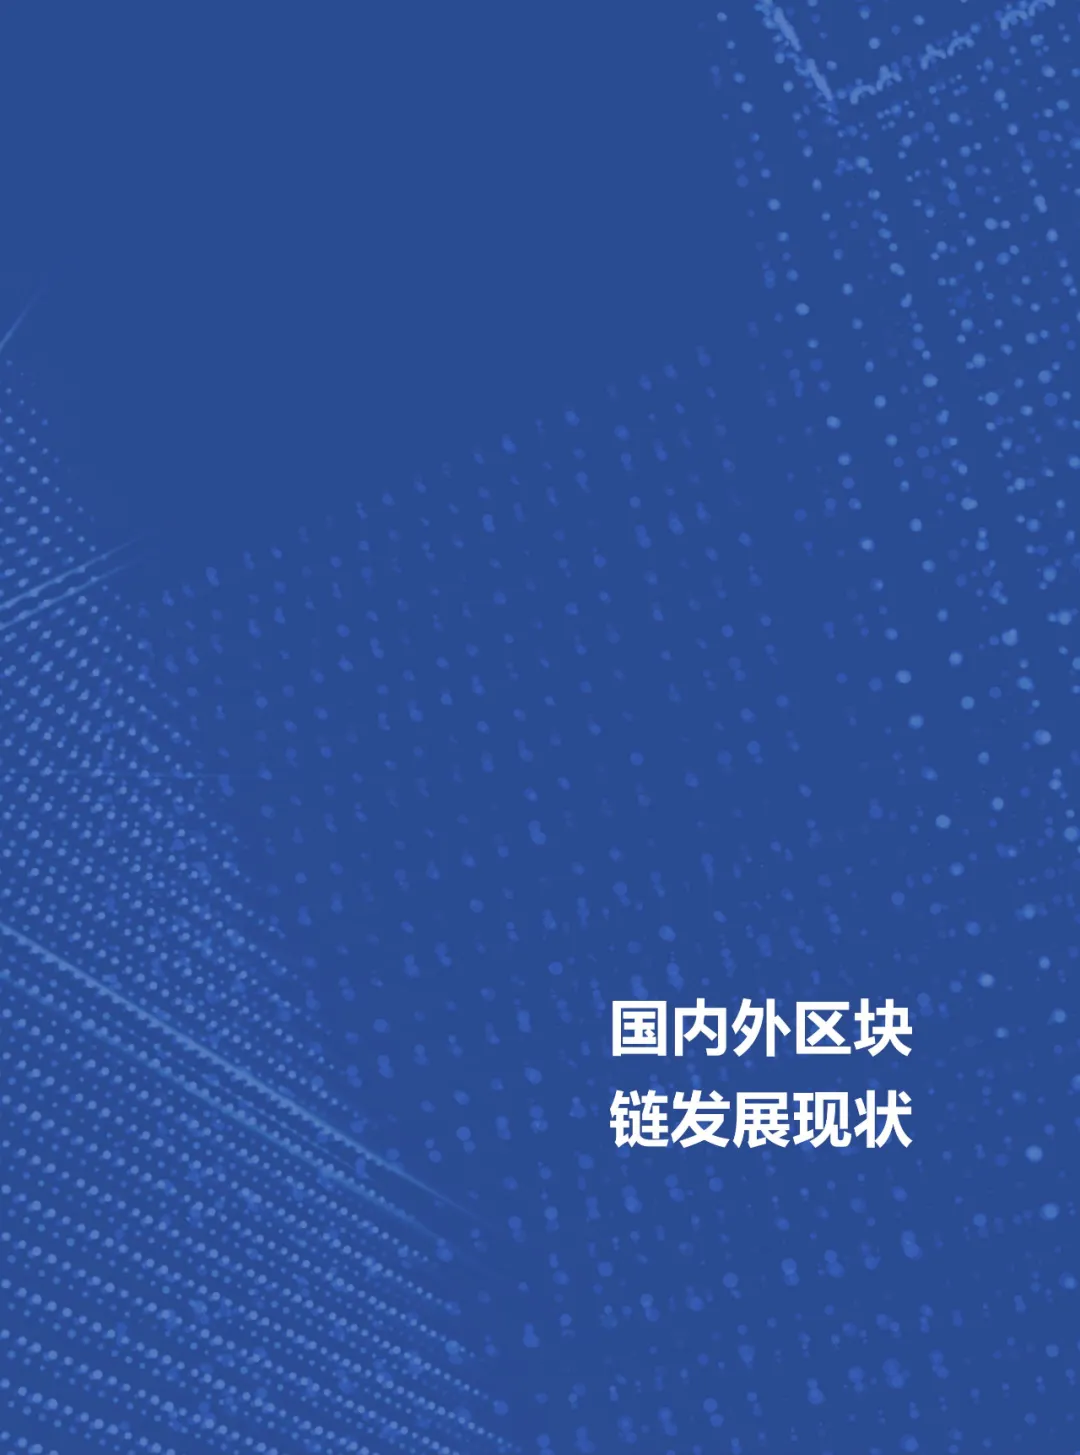 信任经济的崛起——2020中国区块链发展报告_加密算法_19